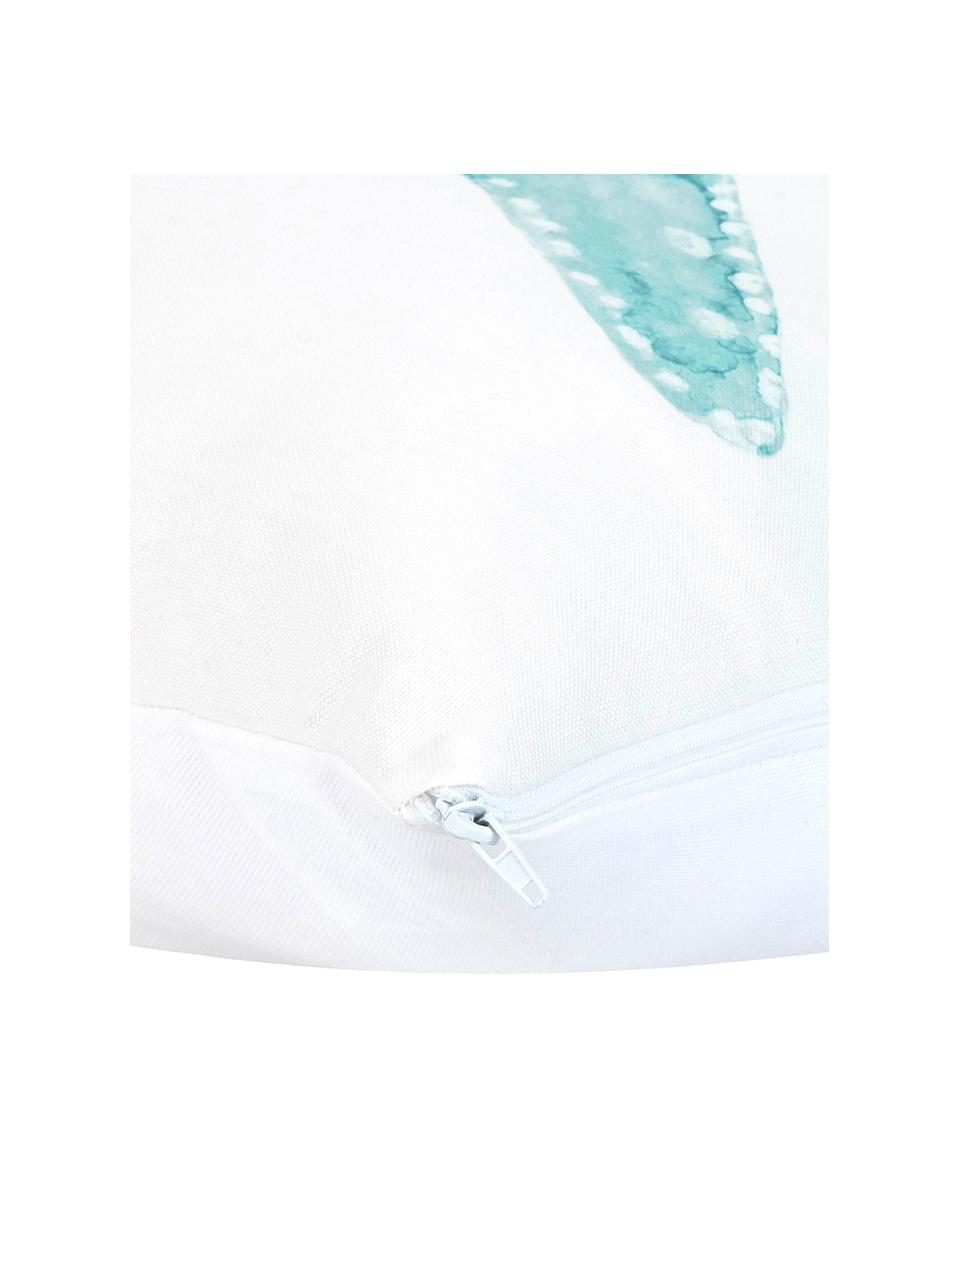 Federa arredo con stampa effetto acquerello Korallion, 100% cotone, Blu, bianco, Larg. 40 x Lung. 40 cm